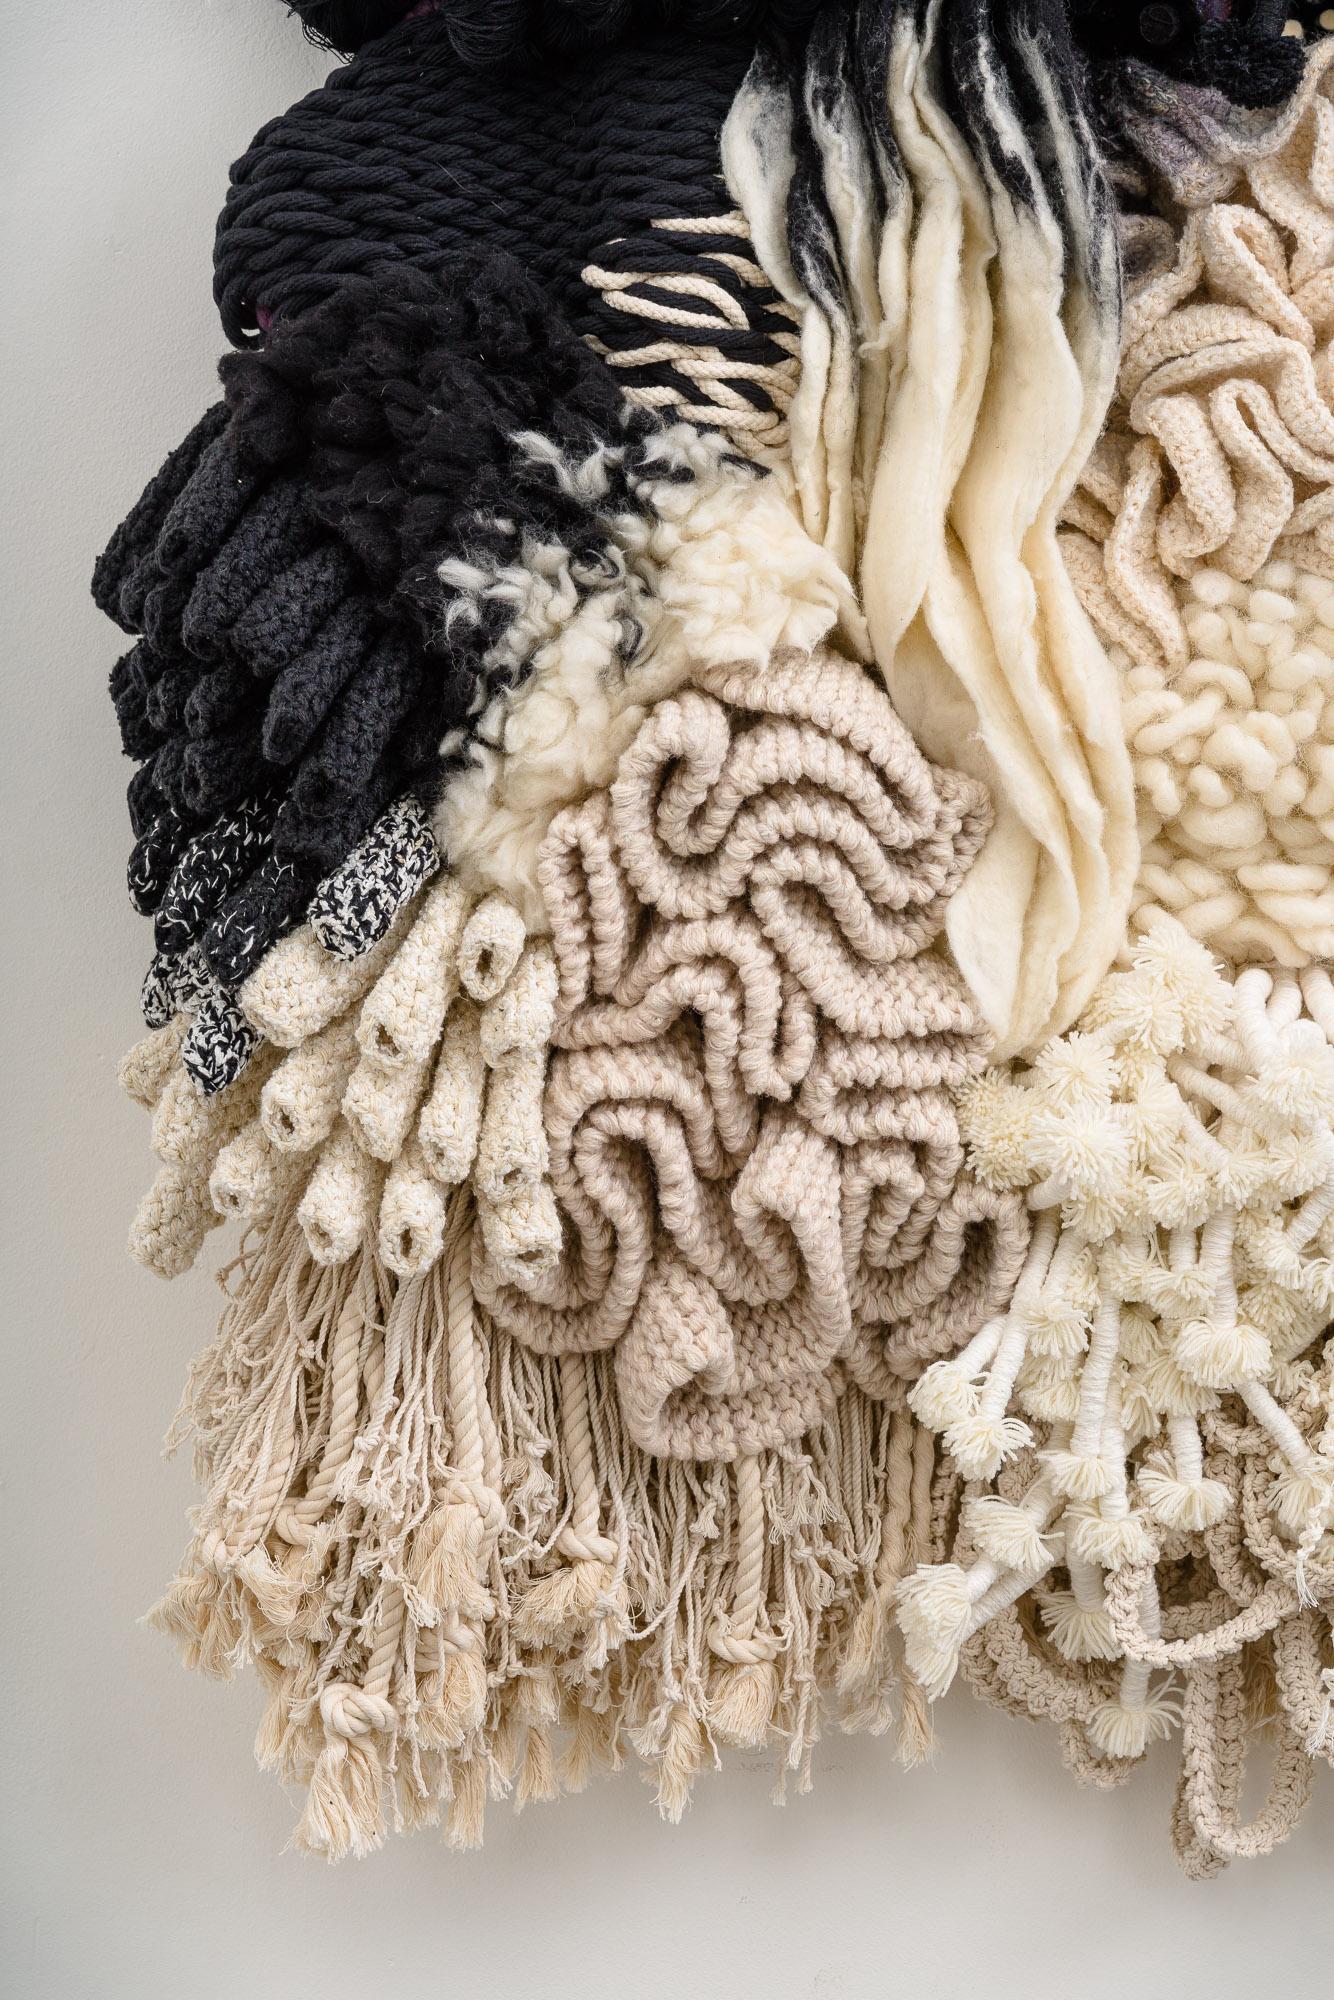 Als eine der ältesten Formen des menschlichen Handwerks ist die Textilie eine universelle Sprache, die sowohl essentiell als auch ein Accessoire ist. In den letzten acht Jahren hat der nomadische Künstler Erik Speer experimentelle